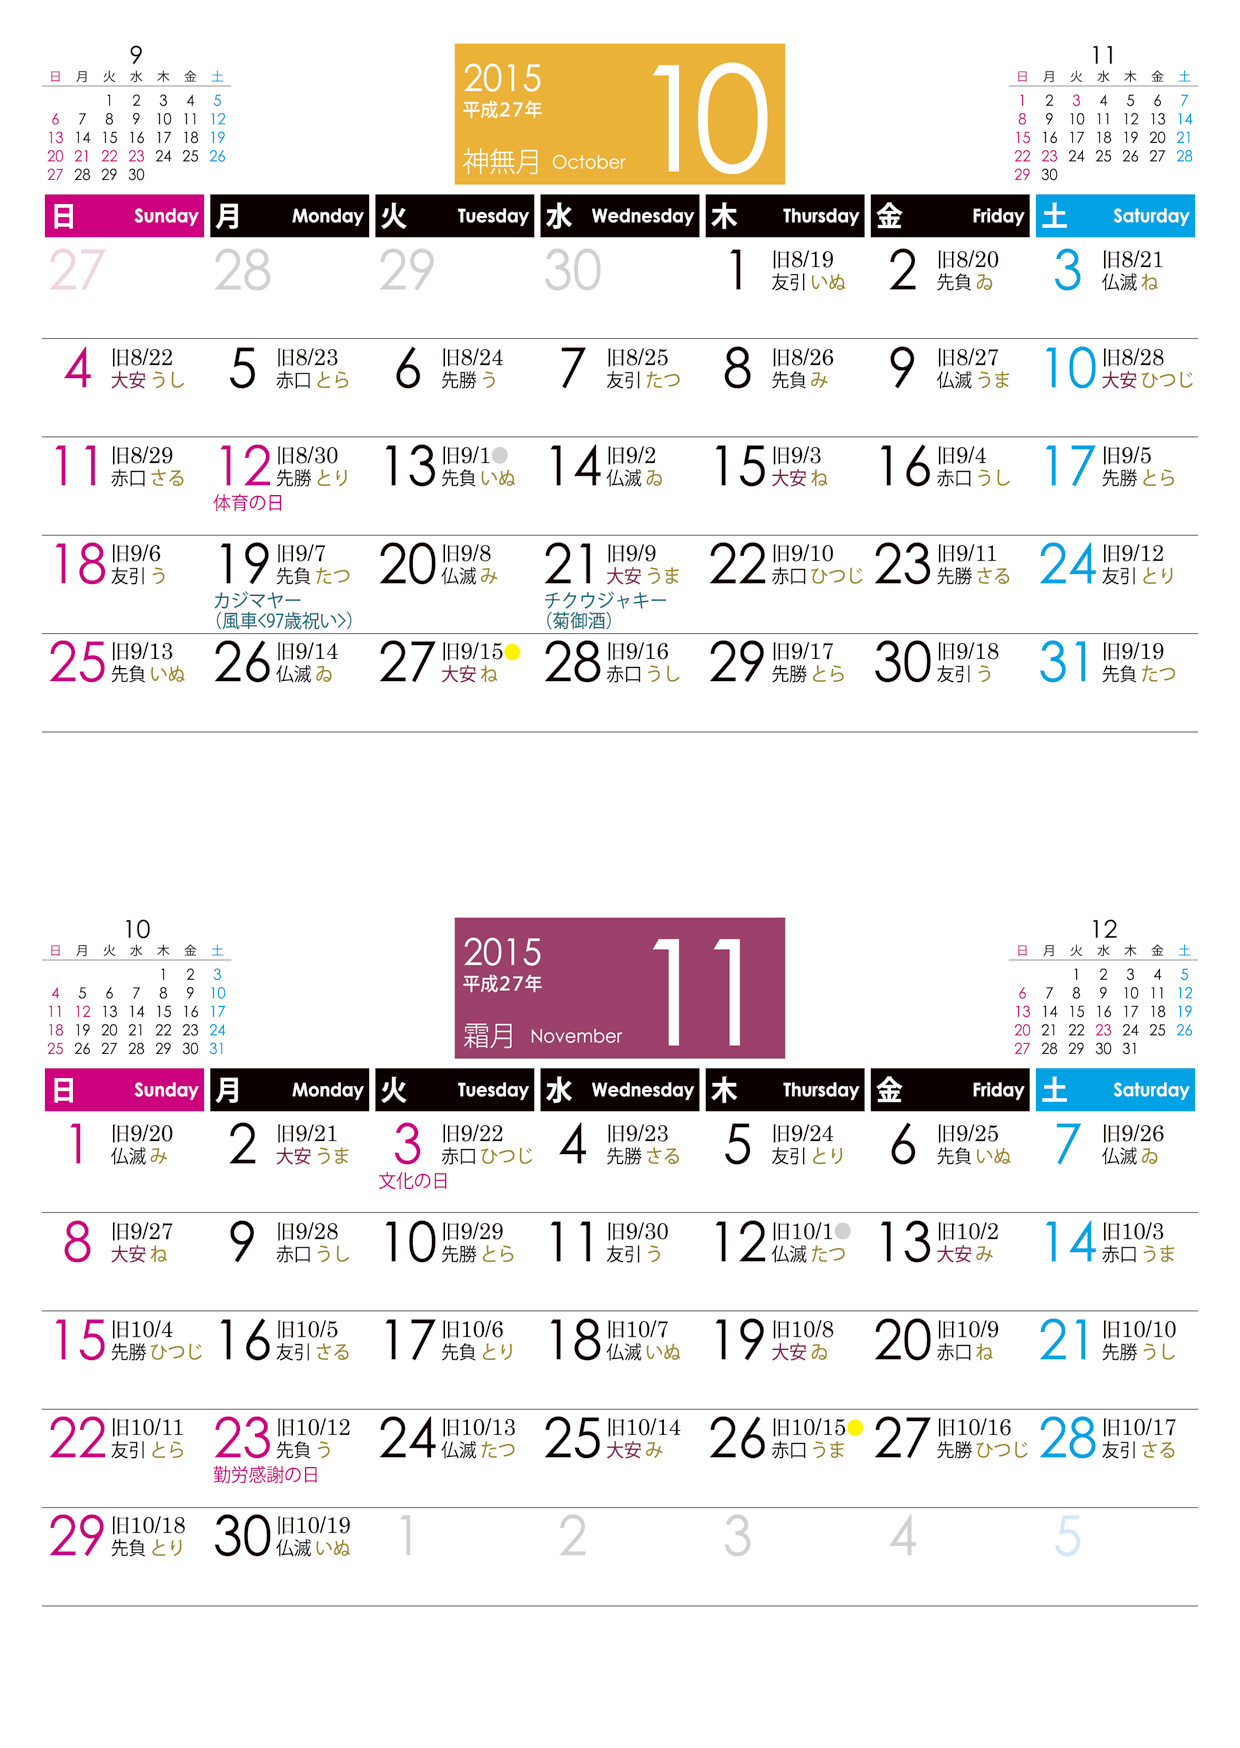 おきなわタウンネットの旧暦入り沖縄カレンダー 2015年版 沖縄観光 生活 移住情報サイト 沖縄タウンネット